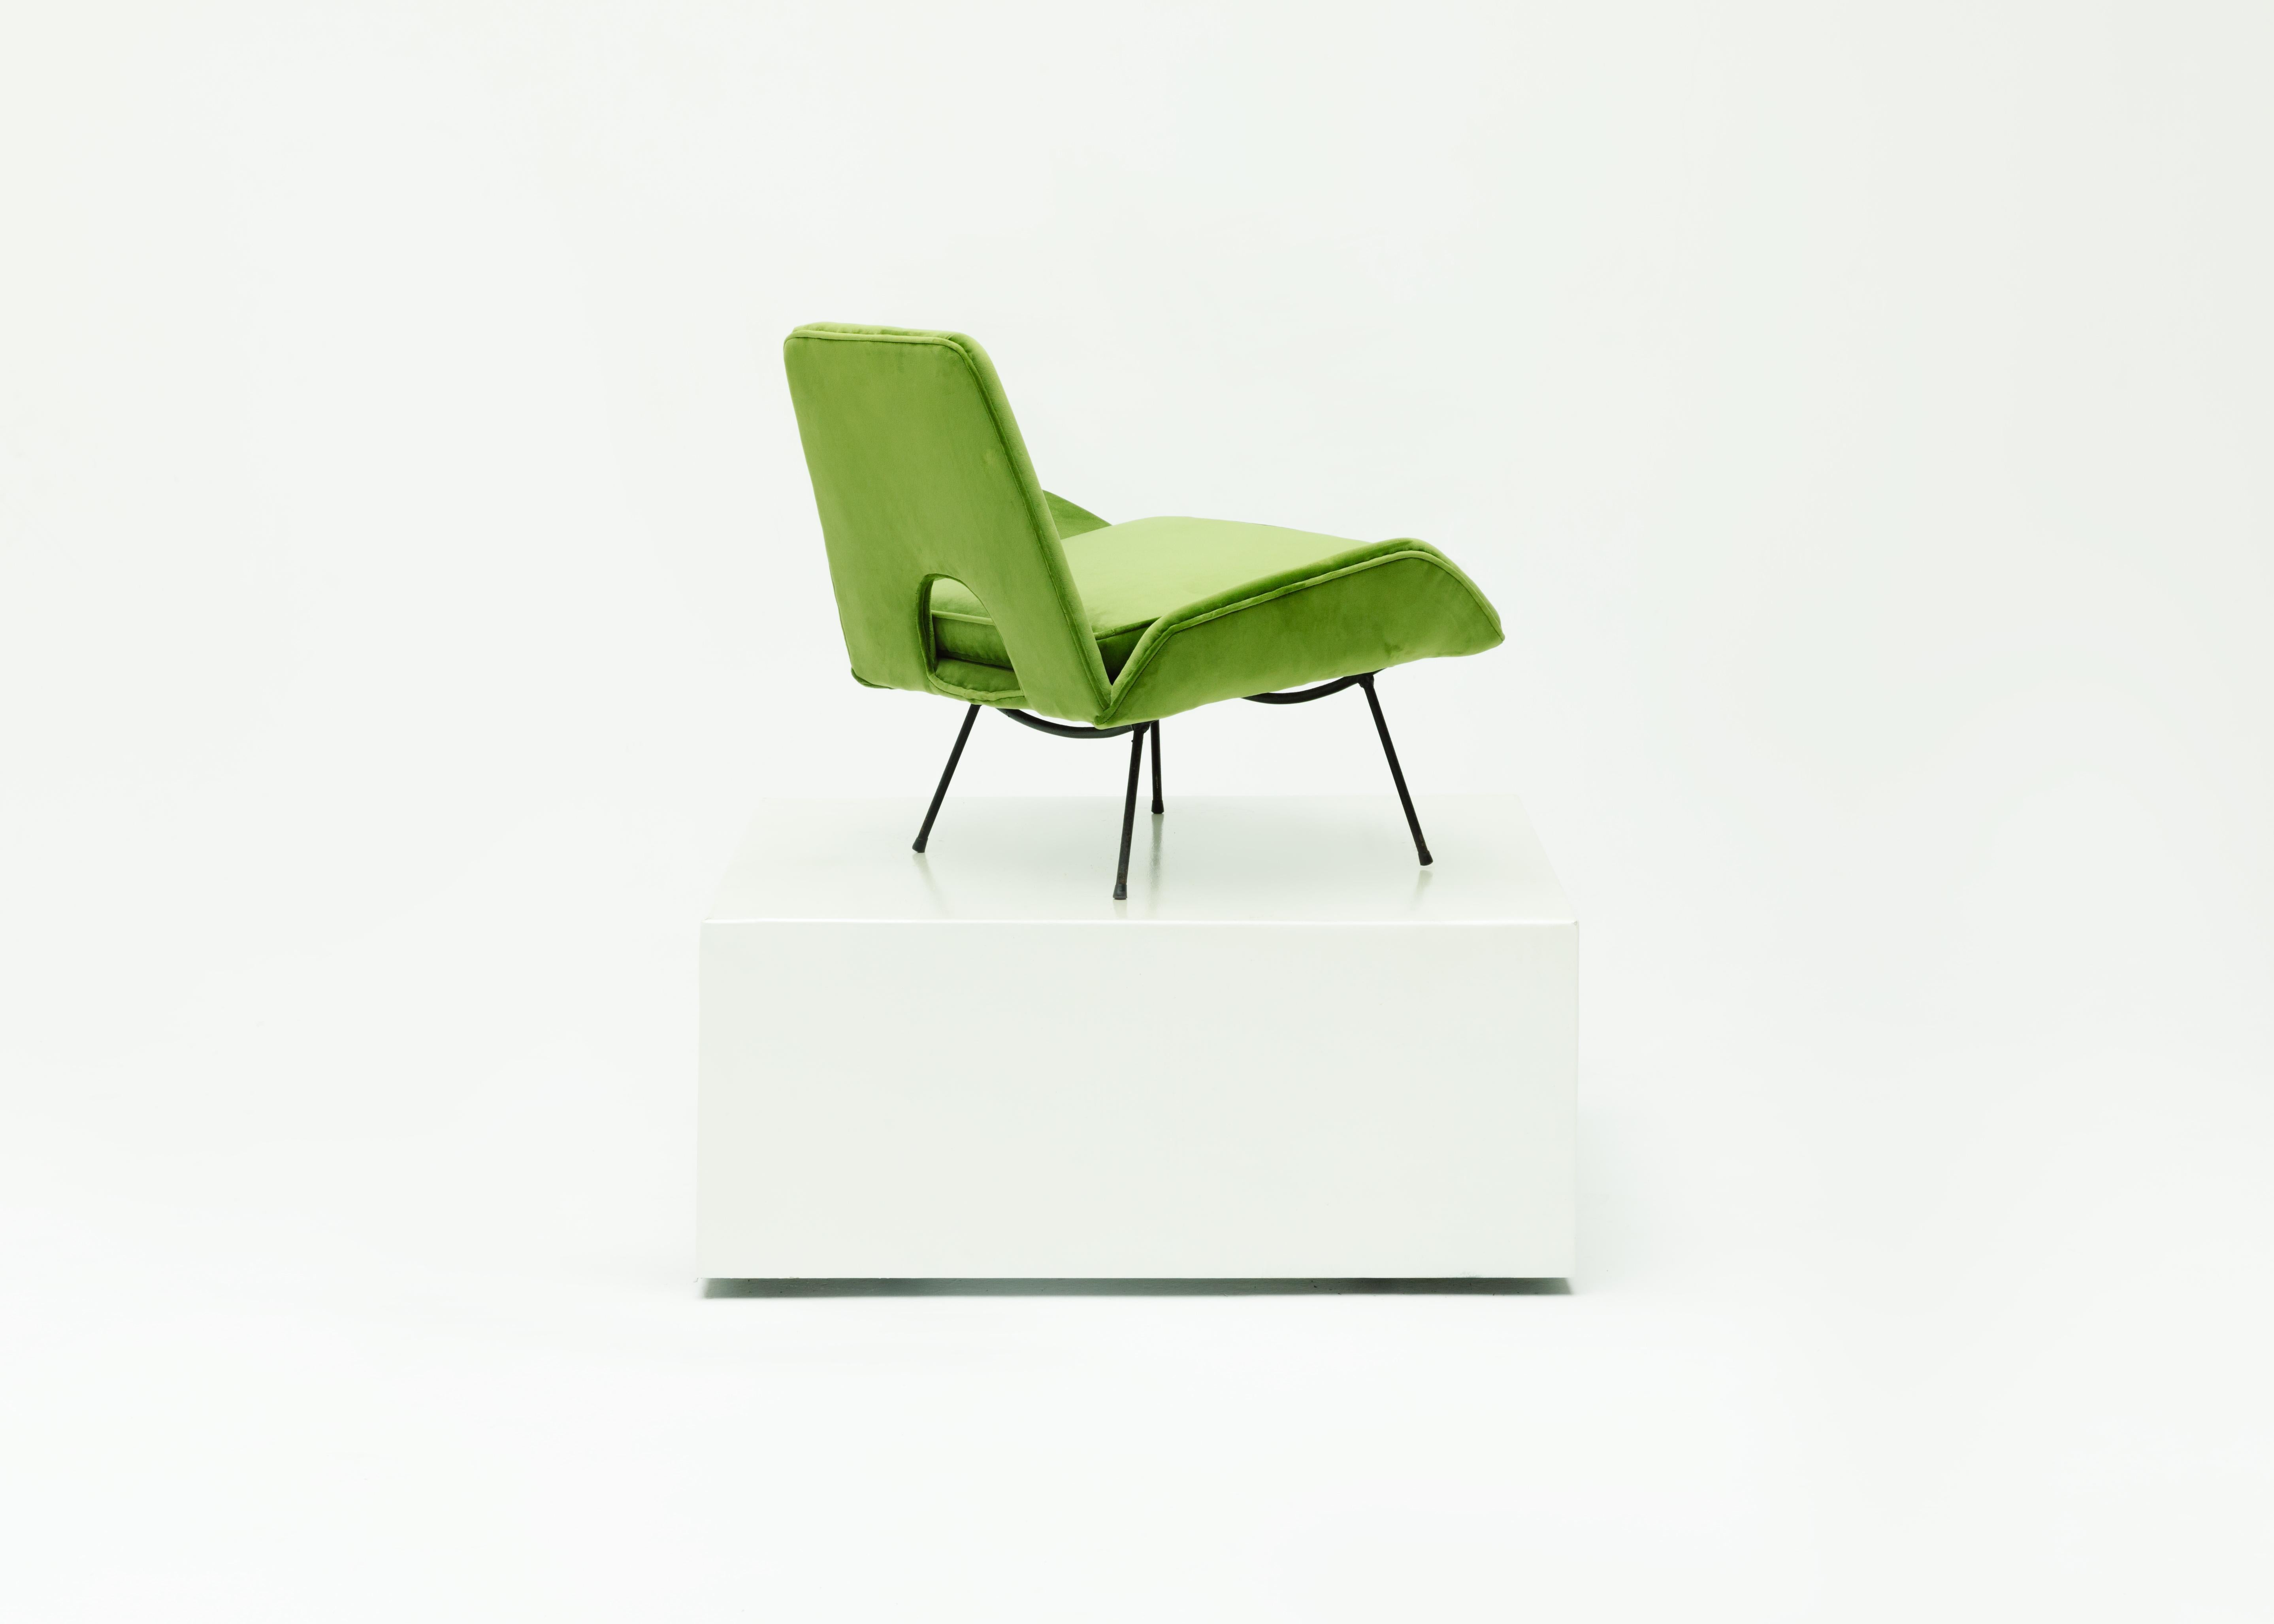 Entworfen von Carlo Hauner und Martin Eisler für Forma S.A Móveis e Objetos de Arte, um 1960.
Eine moderne brasilianische Sessel in der gebogenen Eisenstruktur und vor kurzem Polsterung in grünem Samt gemacht. 

Der Sessel besteht aus einem